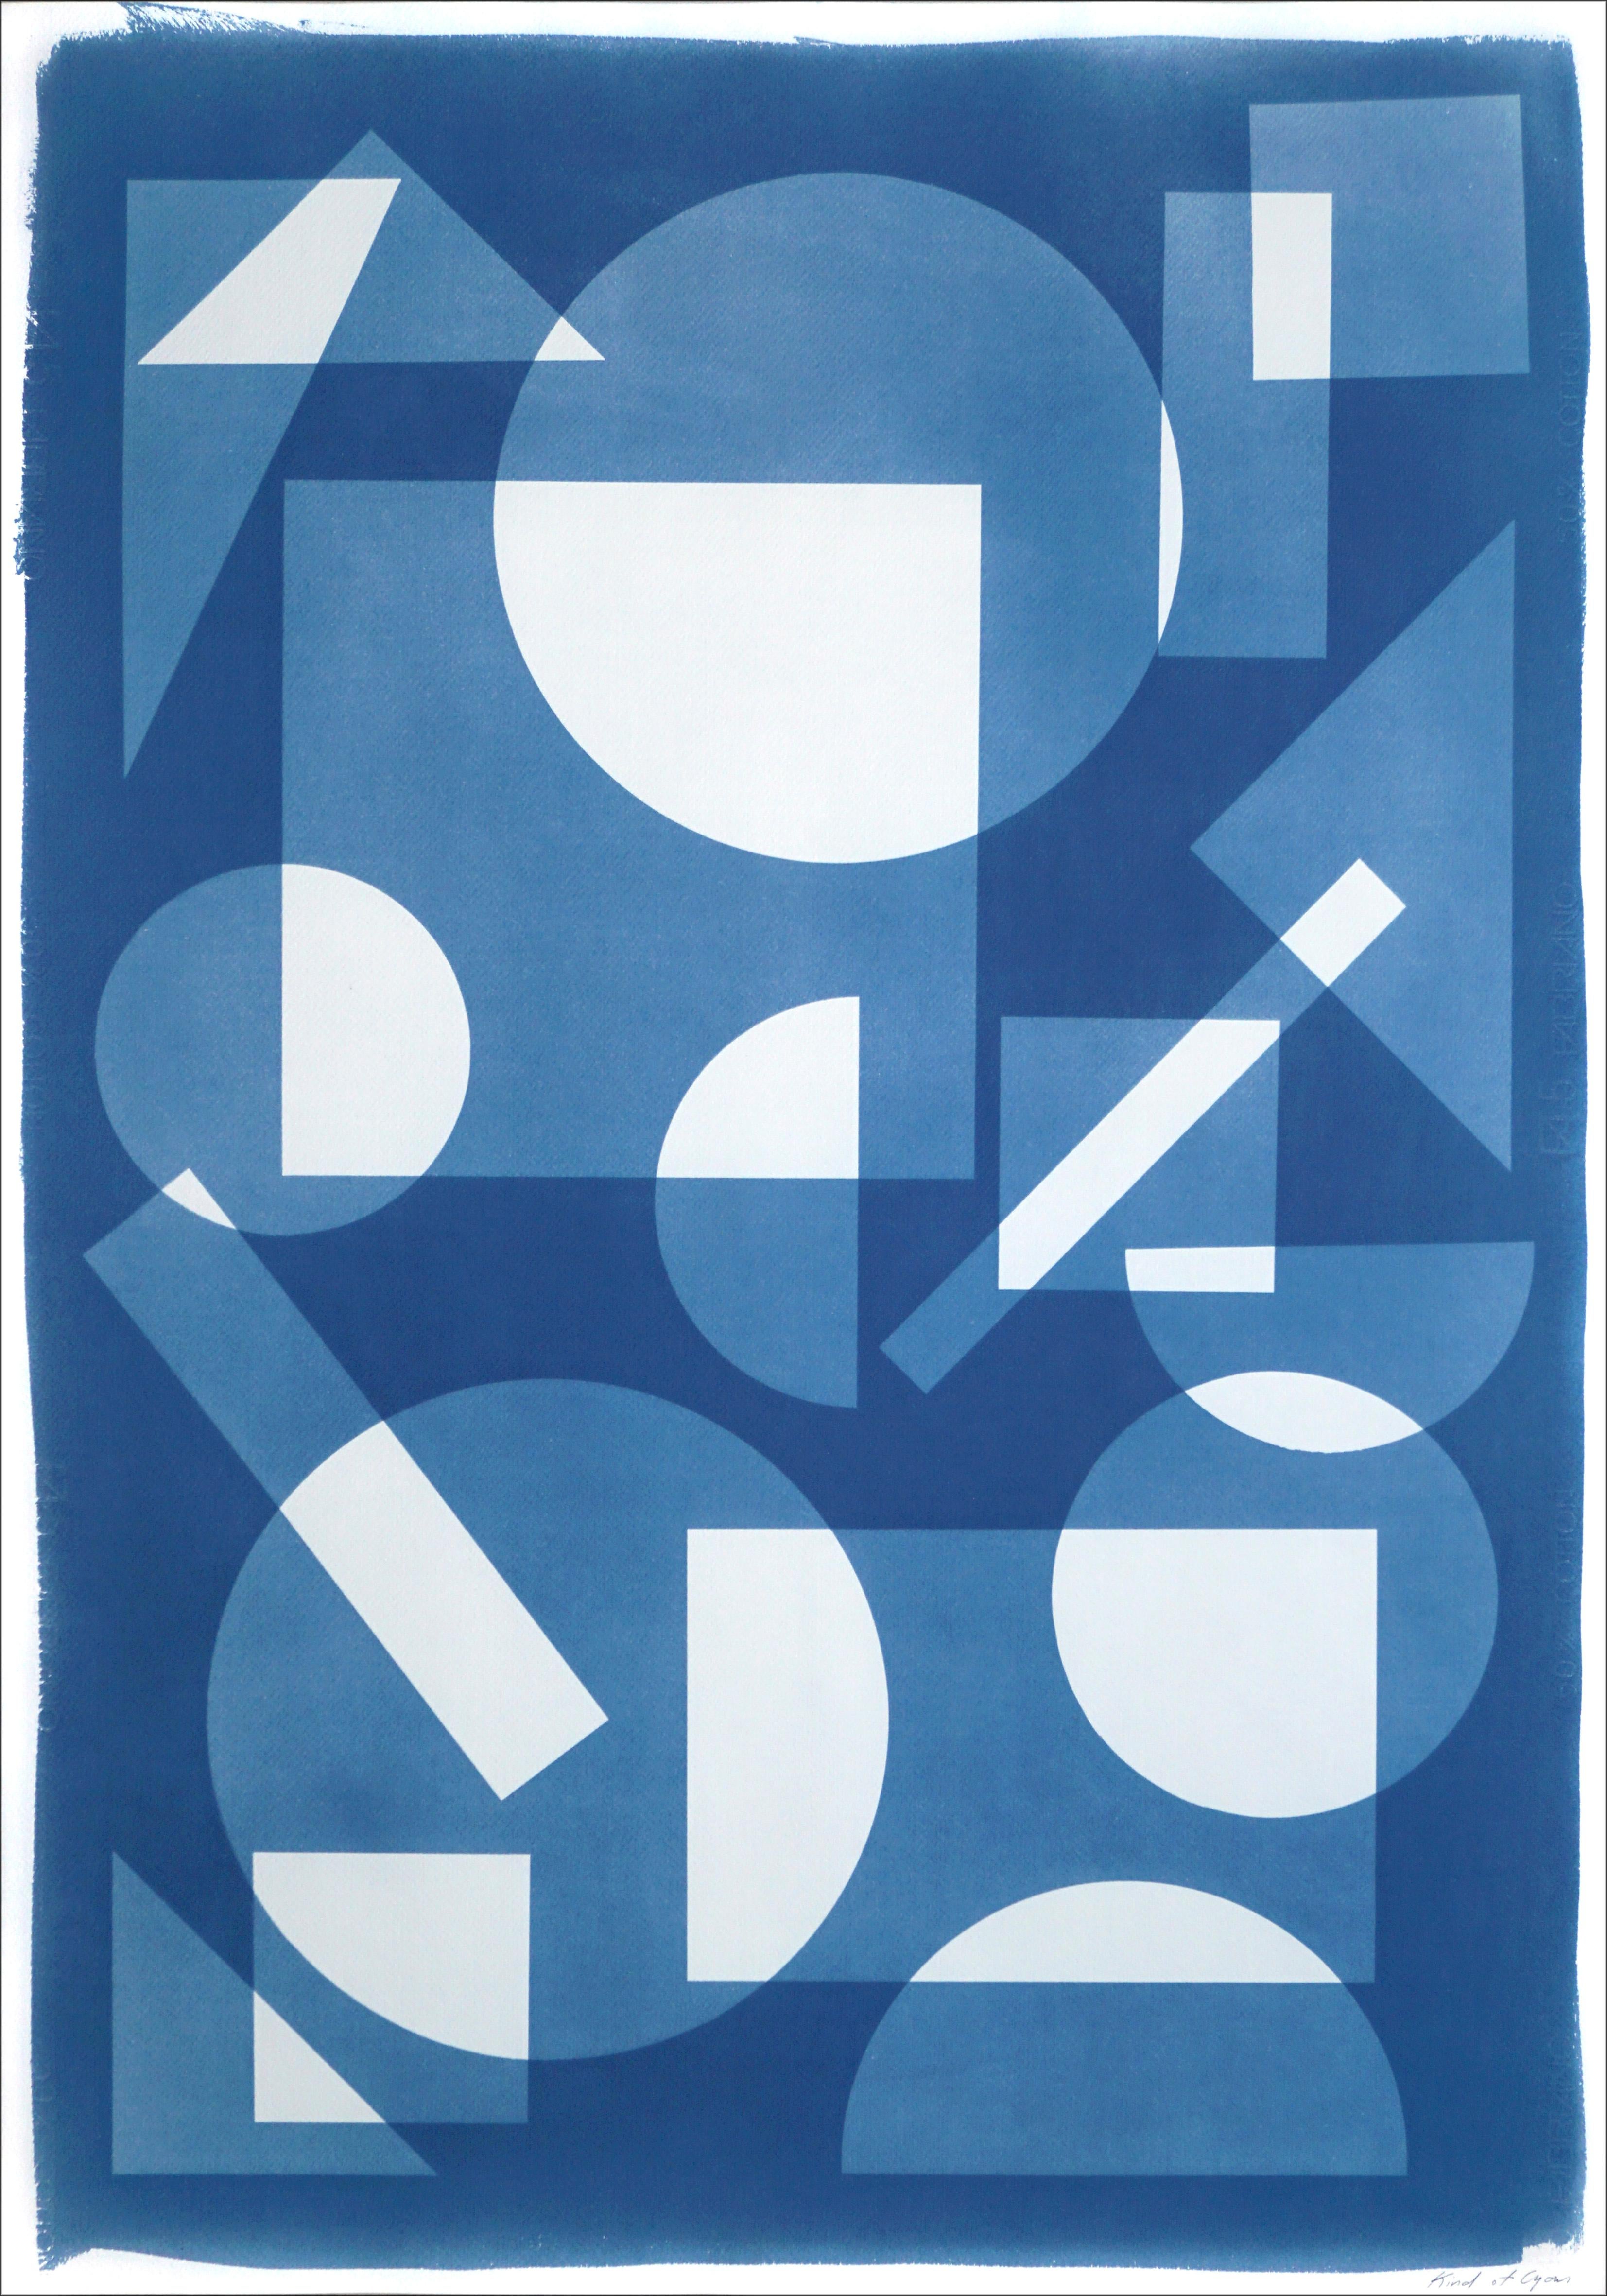 Kind of Cyan Abstract Print – Konstruktivistische Monotypie in schwebenden Formen, weiße und blaue Geometrie